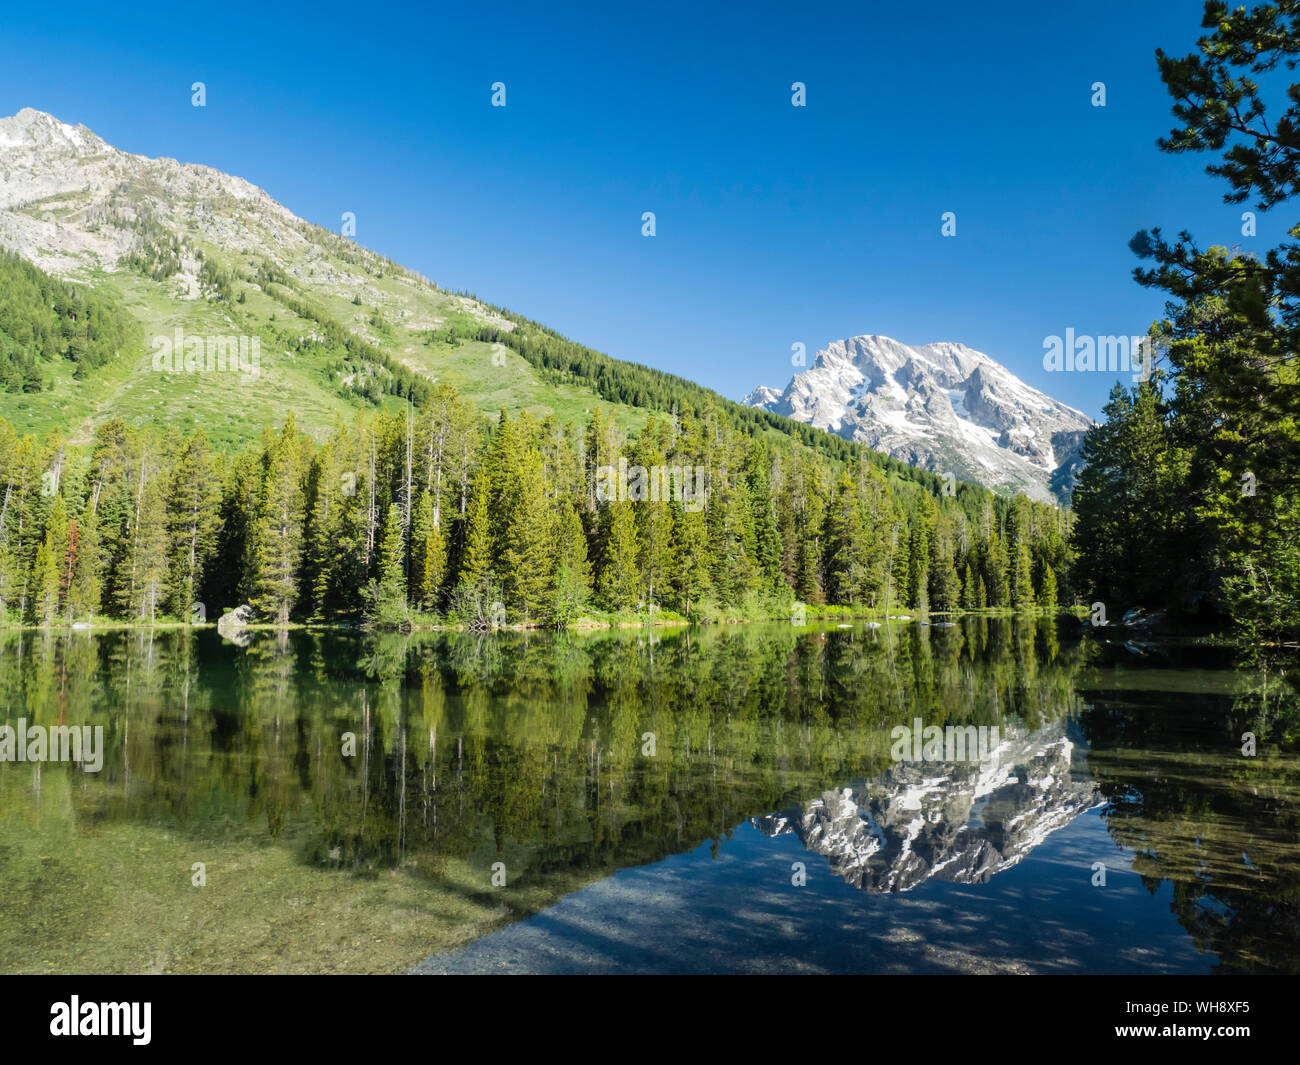 Montagne innevate si riflette nelle calme acque del lago di stringa, Grand Teton National Park, Wyoming negli Stati Uniti d'America, America del Nord Foto Stock